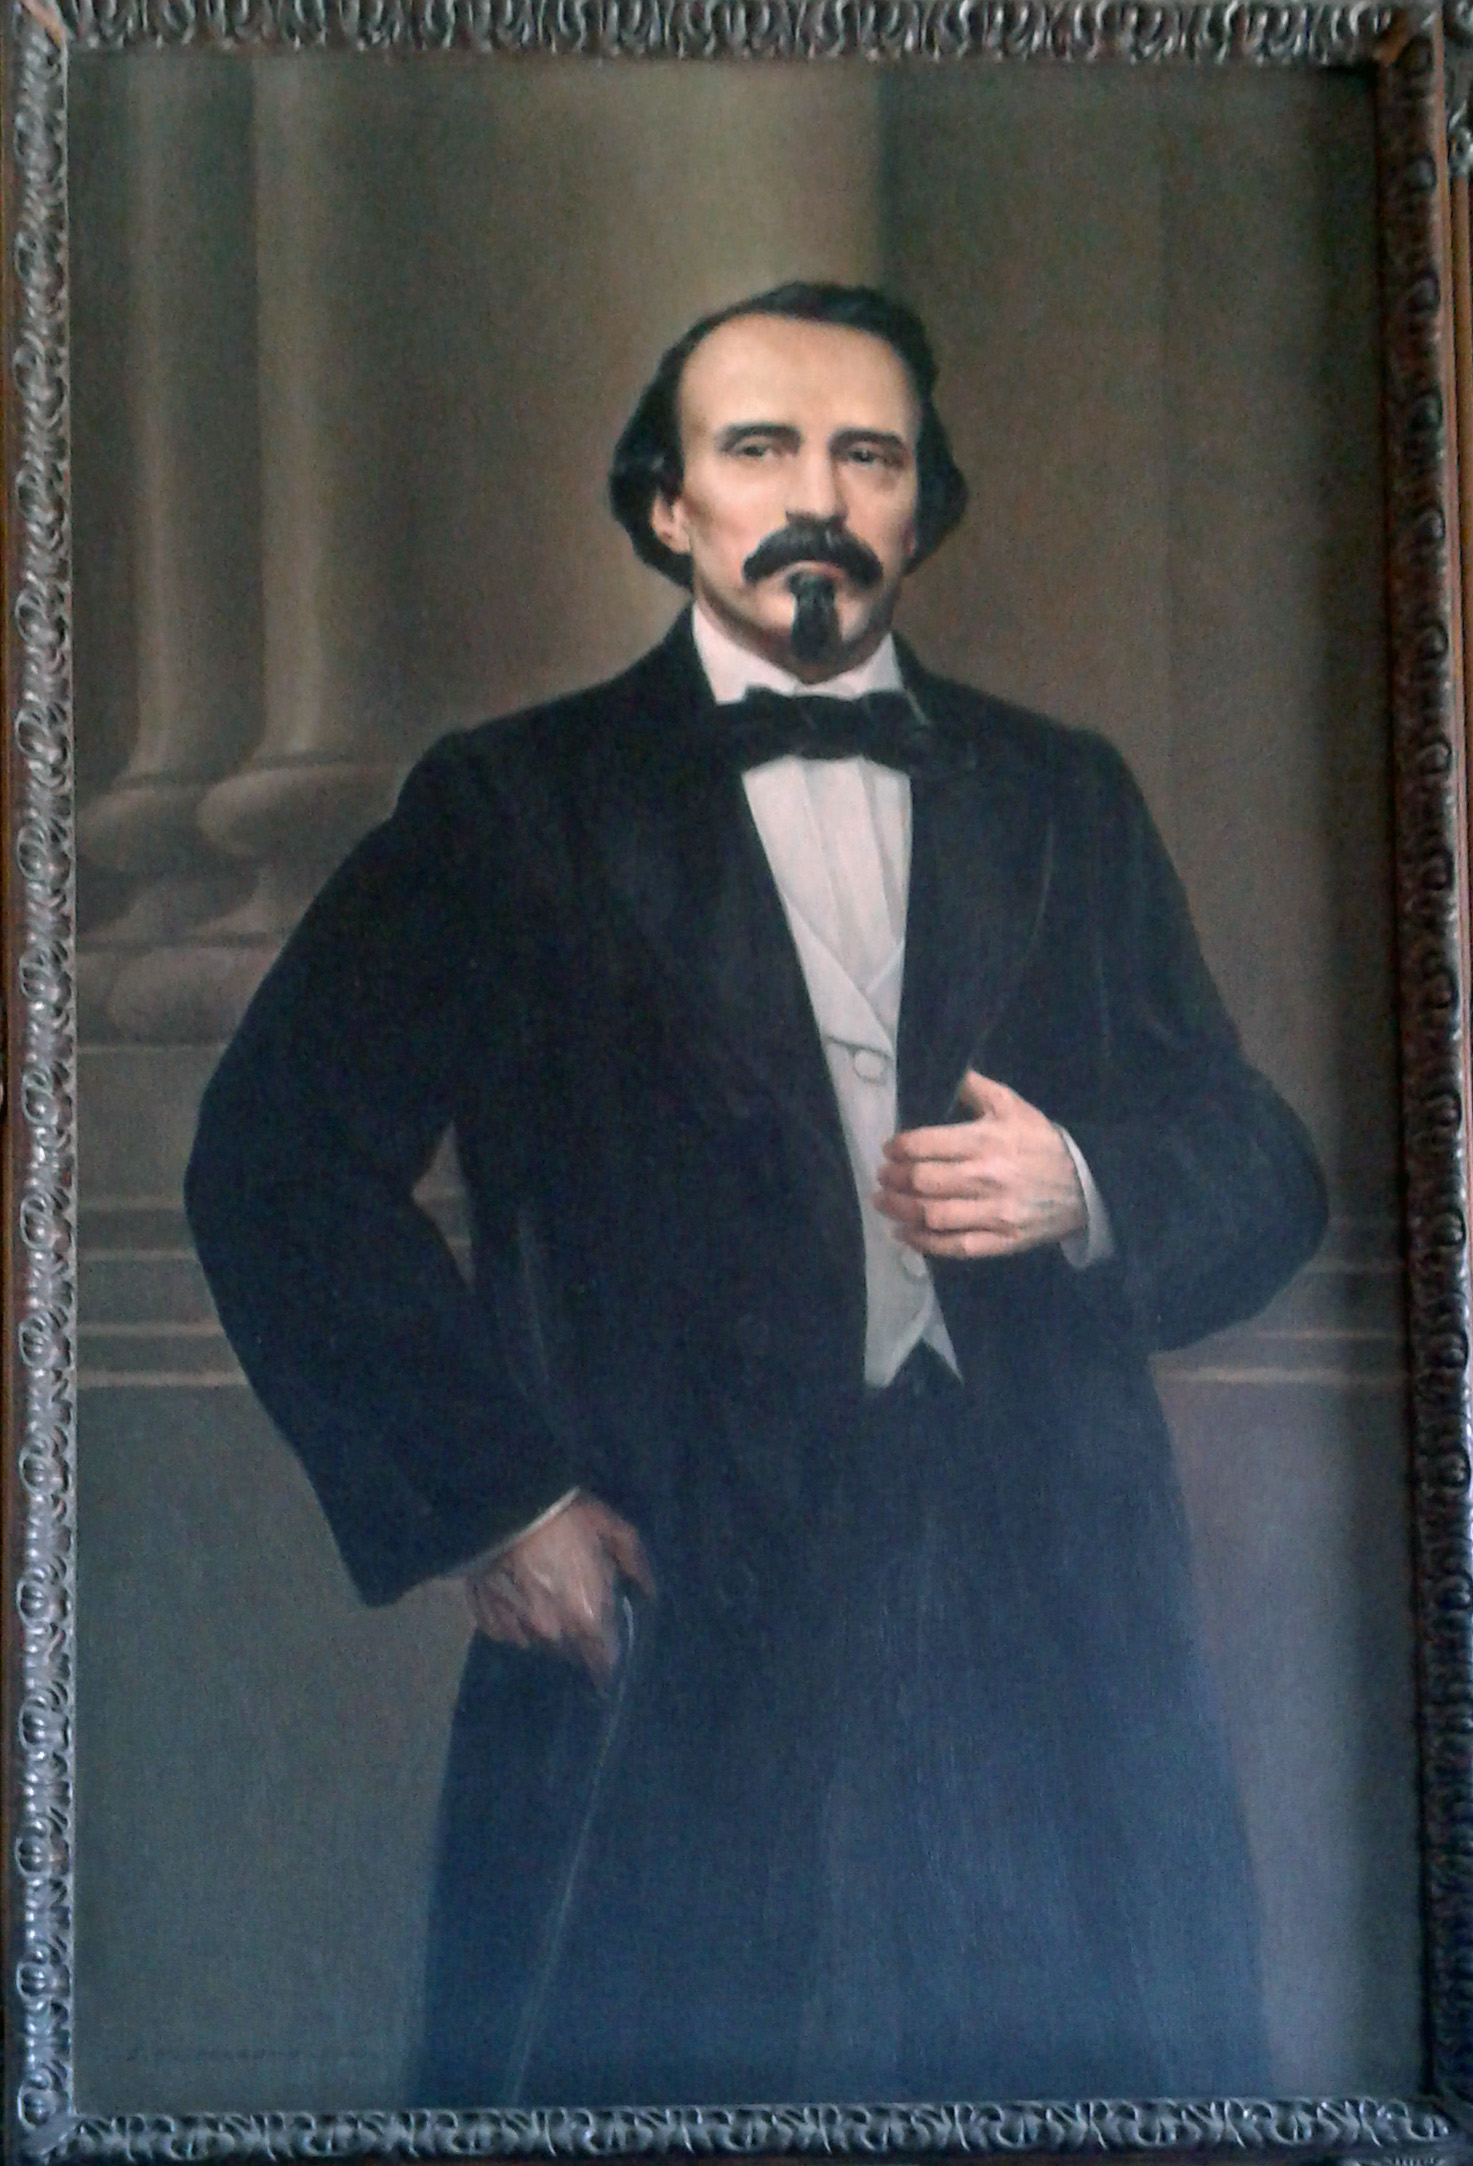 Retrato de Carlos Manuel de Céspedes en el Museo de la Revolución, La Habana, Cuba.